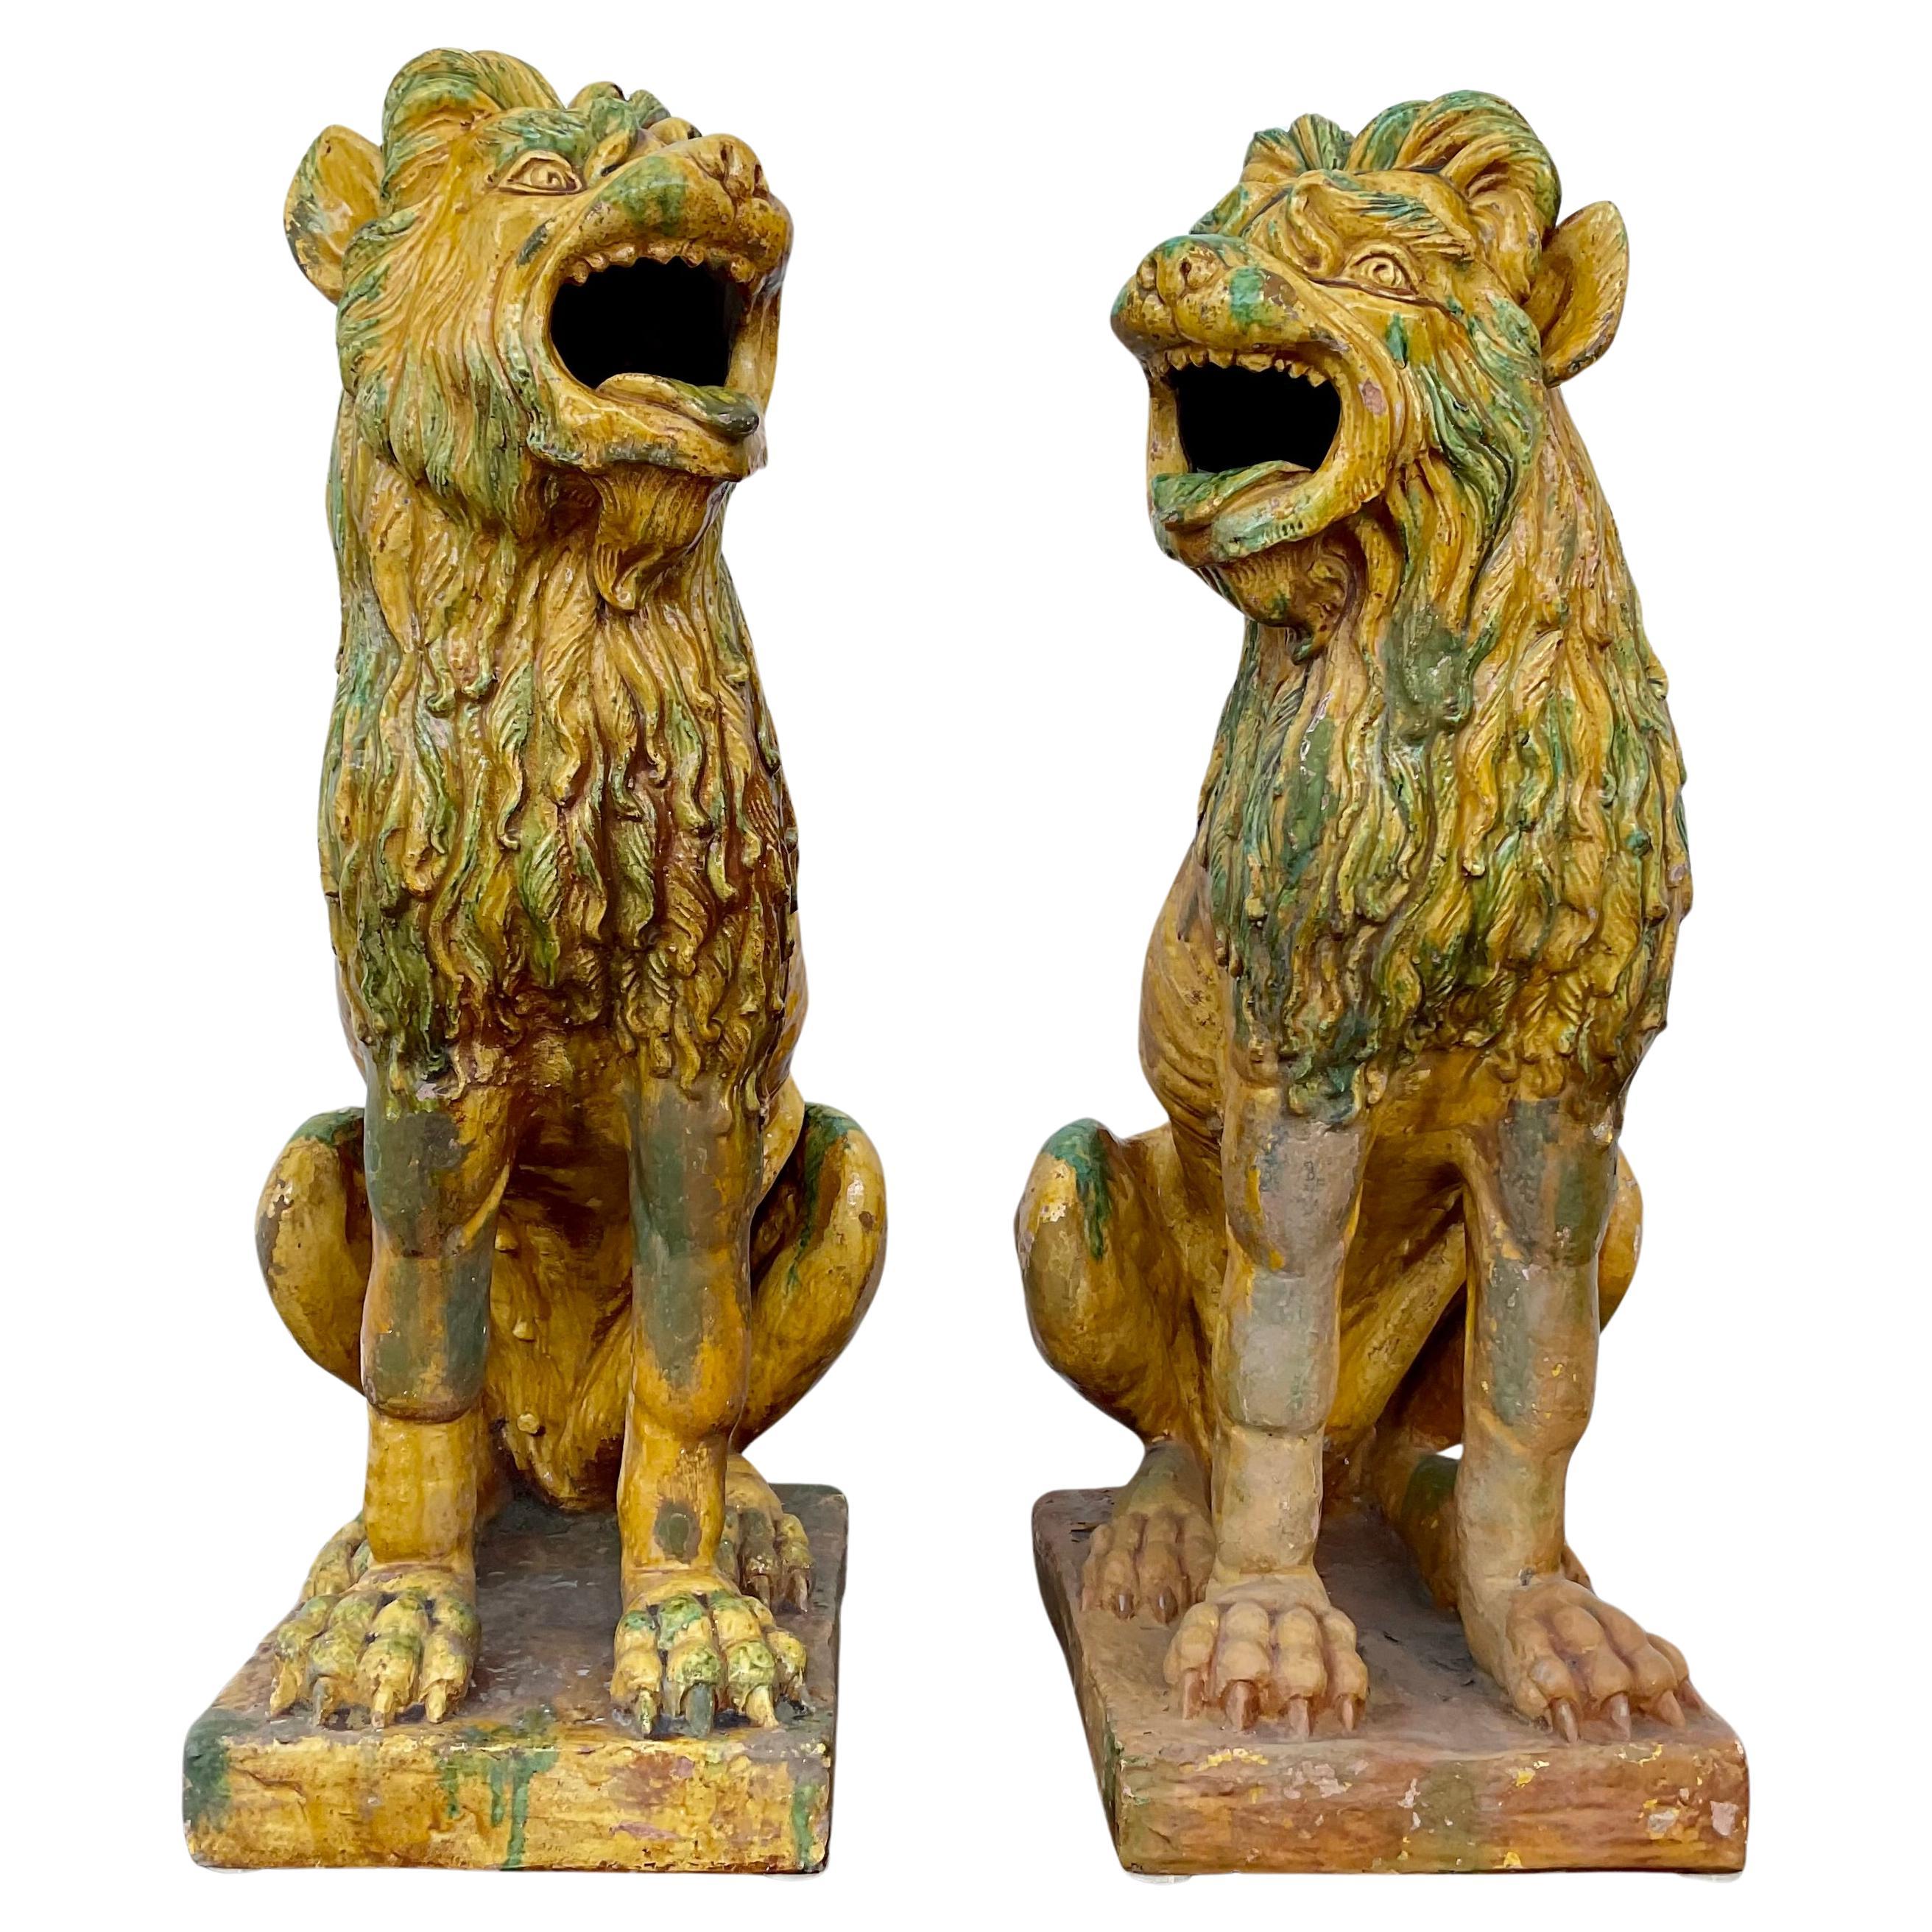 Extraordinaire paire de statuettes de chiens ou de lions en terre cuite décorative, vers le début du 20e siècle. Glacés en vert, jaune et rouge avec de légères différences indiquant qu'ils sont faits à la main. Utilisés pour garder l'entrée des